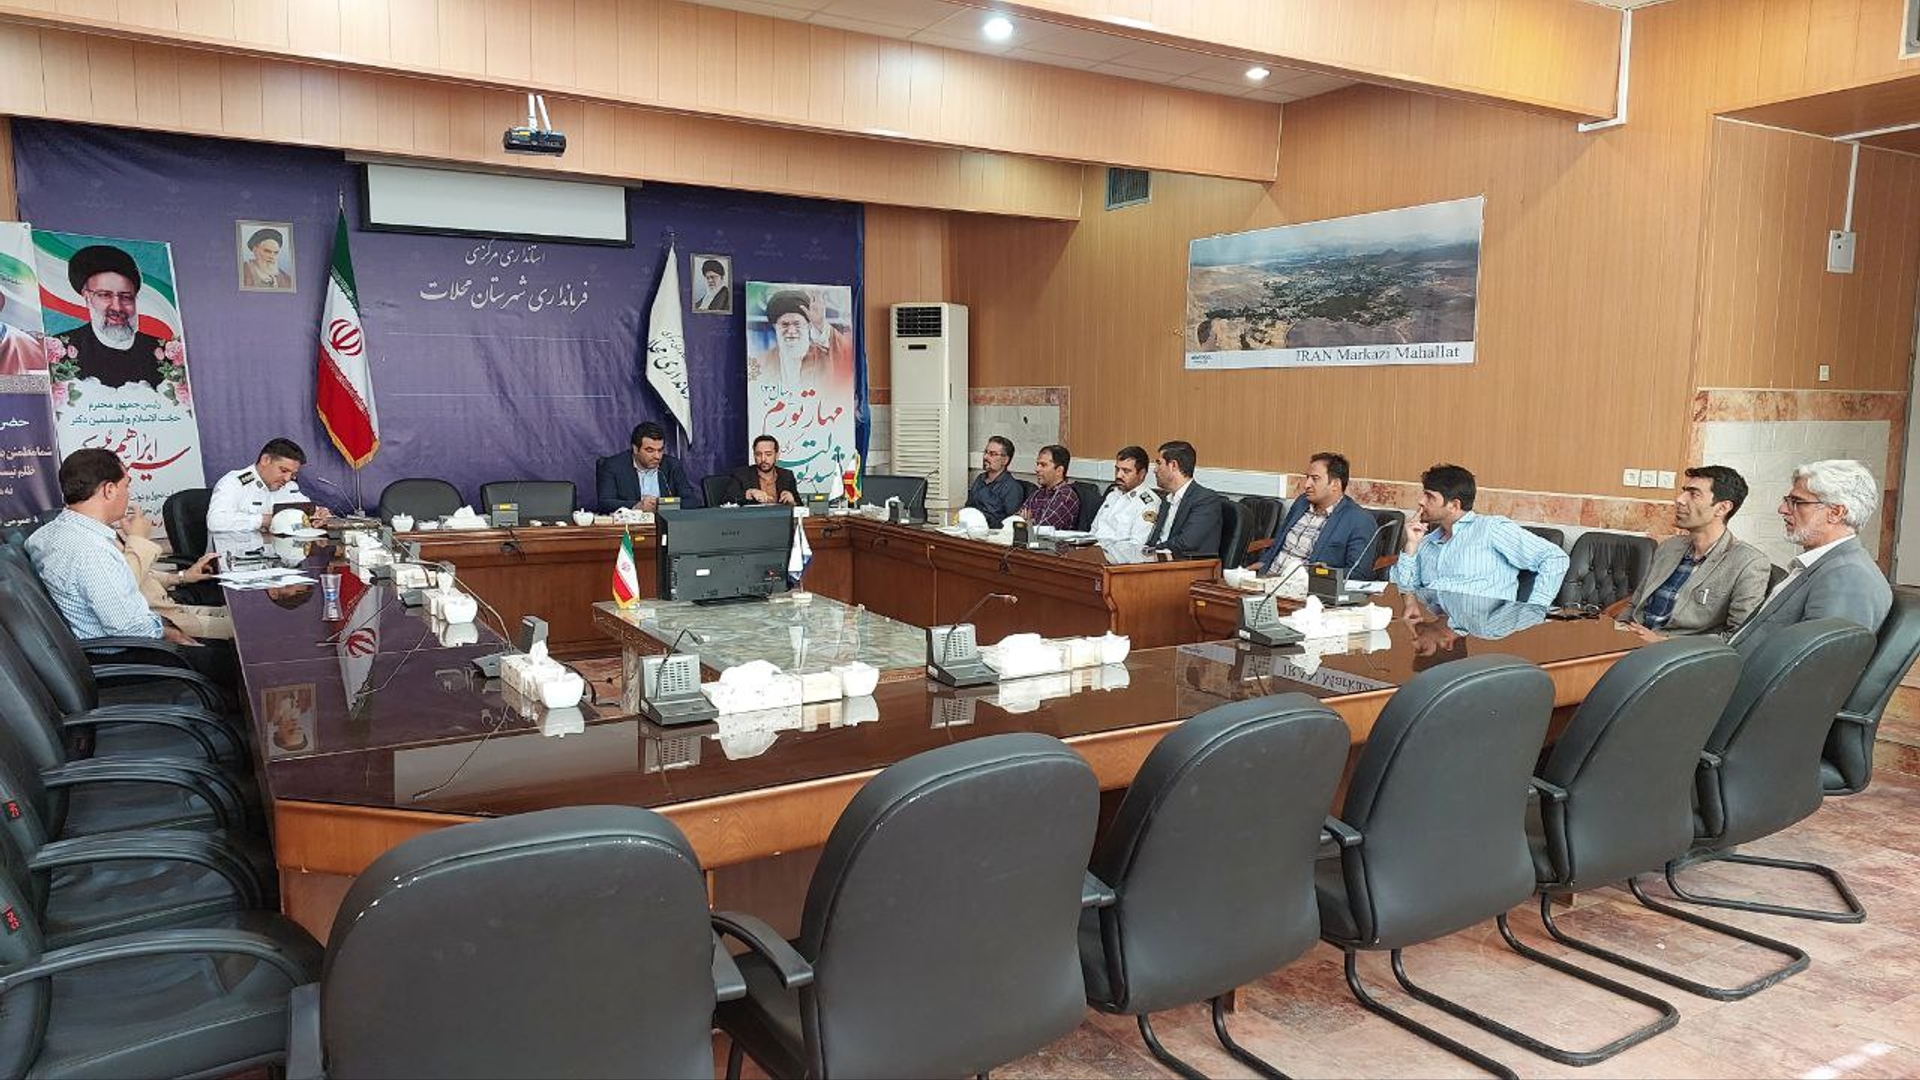 شورای ترافیک شهرستان محلات تشکیل جلسه داد.